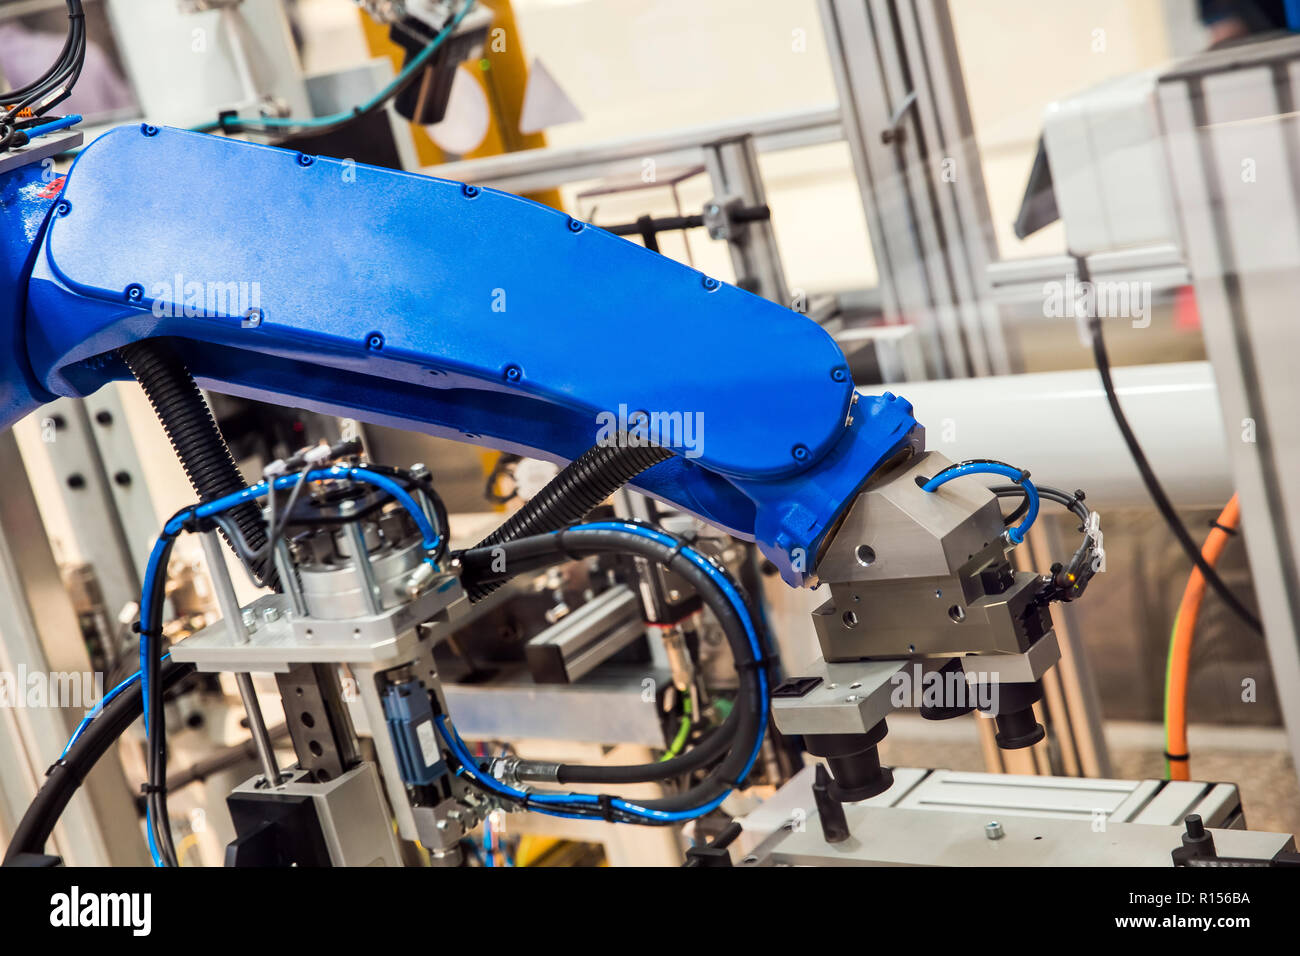 Bras du robot dans le processus de la technologie Banque D'Images